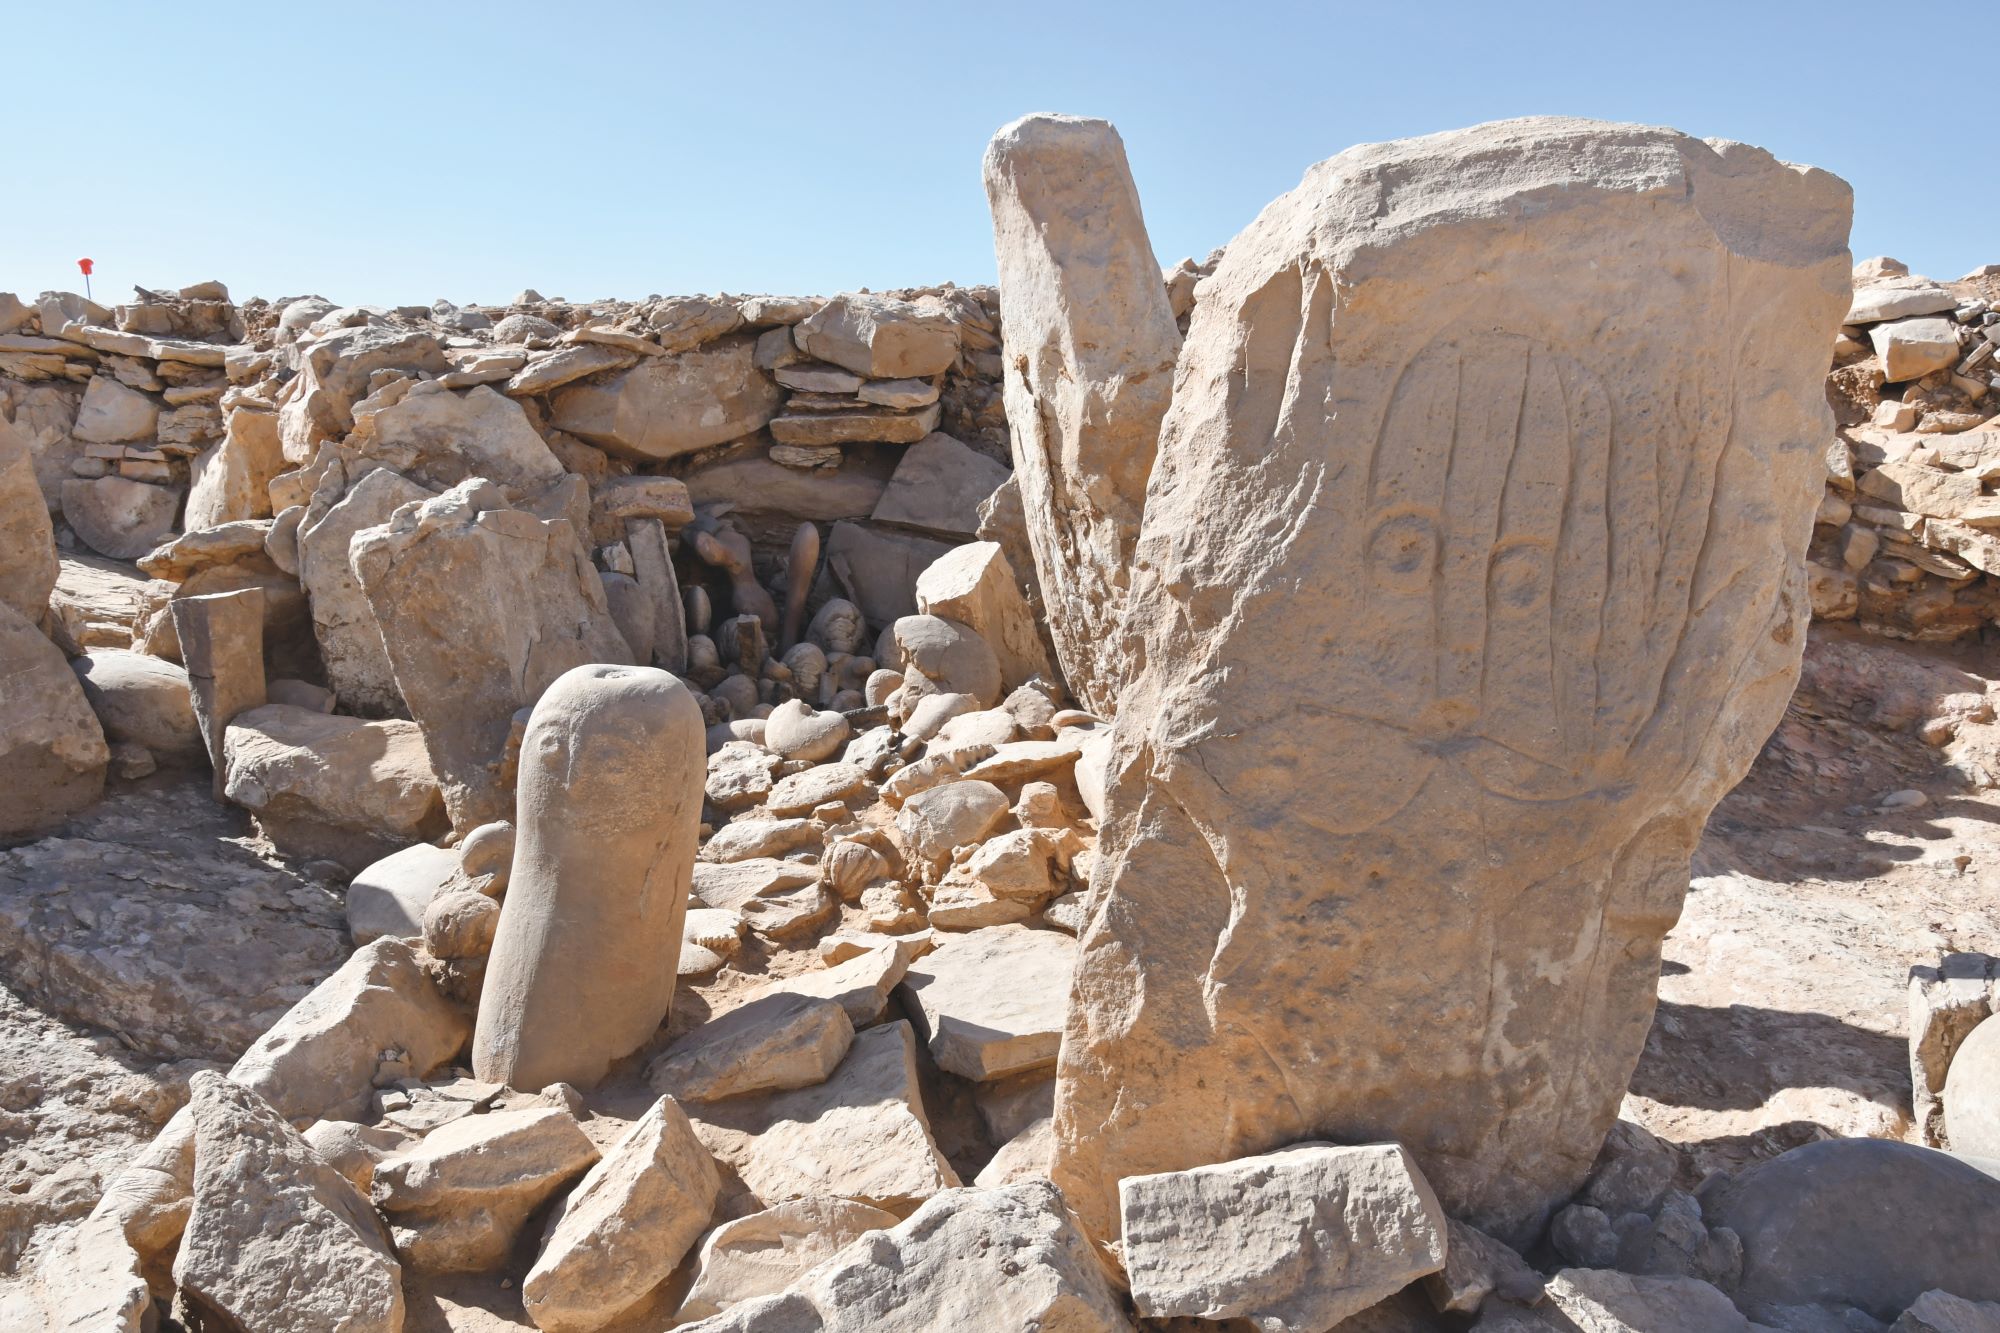 Les deux stèles dressées dites de « Abu Ghassan » et de « Ghassan », et le dépôt rituel de fossiles marins à l’arrière-plan, sur le site JKSH P52, Khashabiyeh. © Mission archéologique du sud-est jordanien